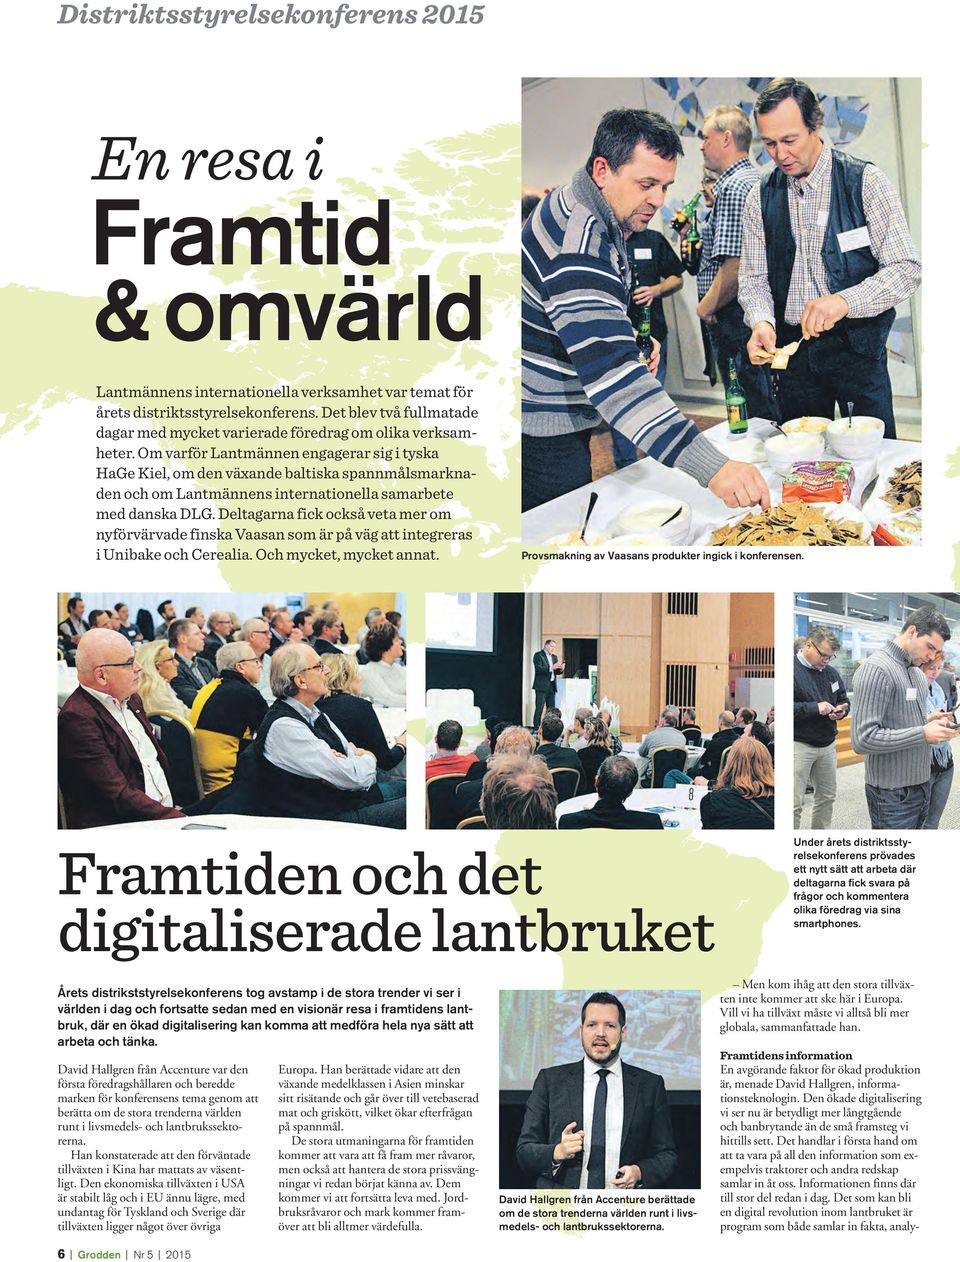 Om varför Lantmännen engagerar sig i tyska HaGe Kiel, om den växande baltiska spannmålsmarknaden och om Lantmännens internationella samarbete med danska DLG.